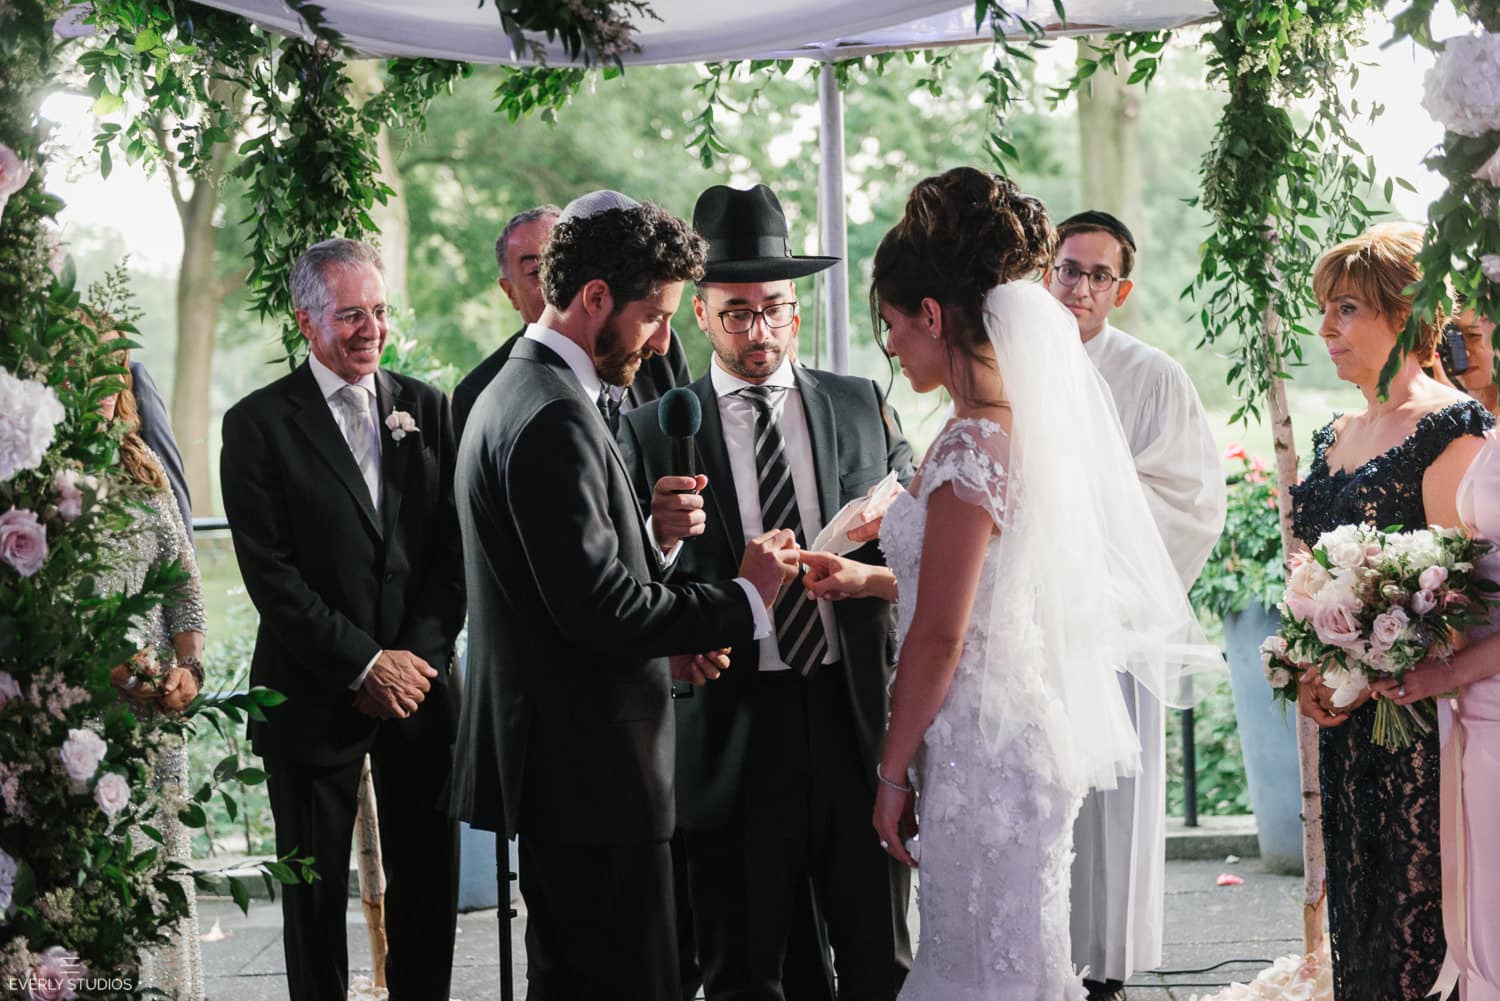 Dyker Beach Golf Course wedding in Dyker Heights, Brooklyn. Persian Jewish wedding. Photos by Brooklyn wedding photographer Everly Studios, www.everlystudios.com